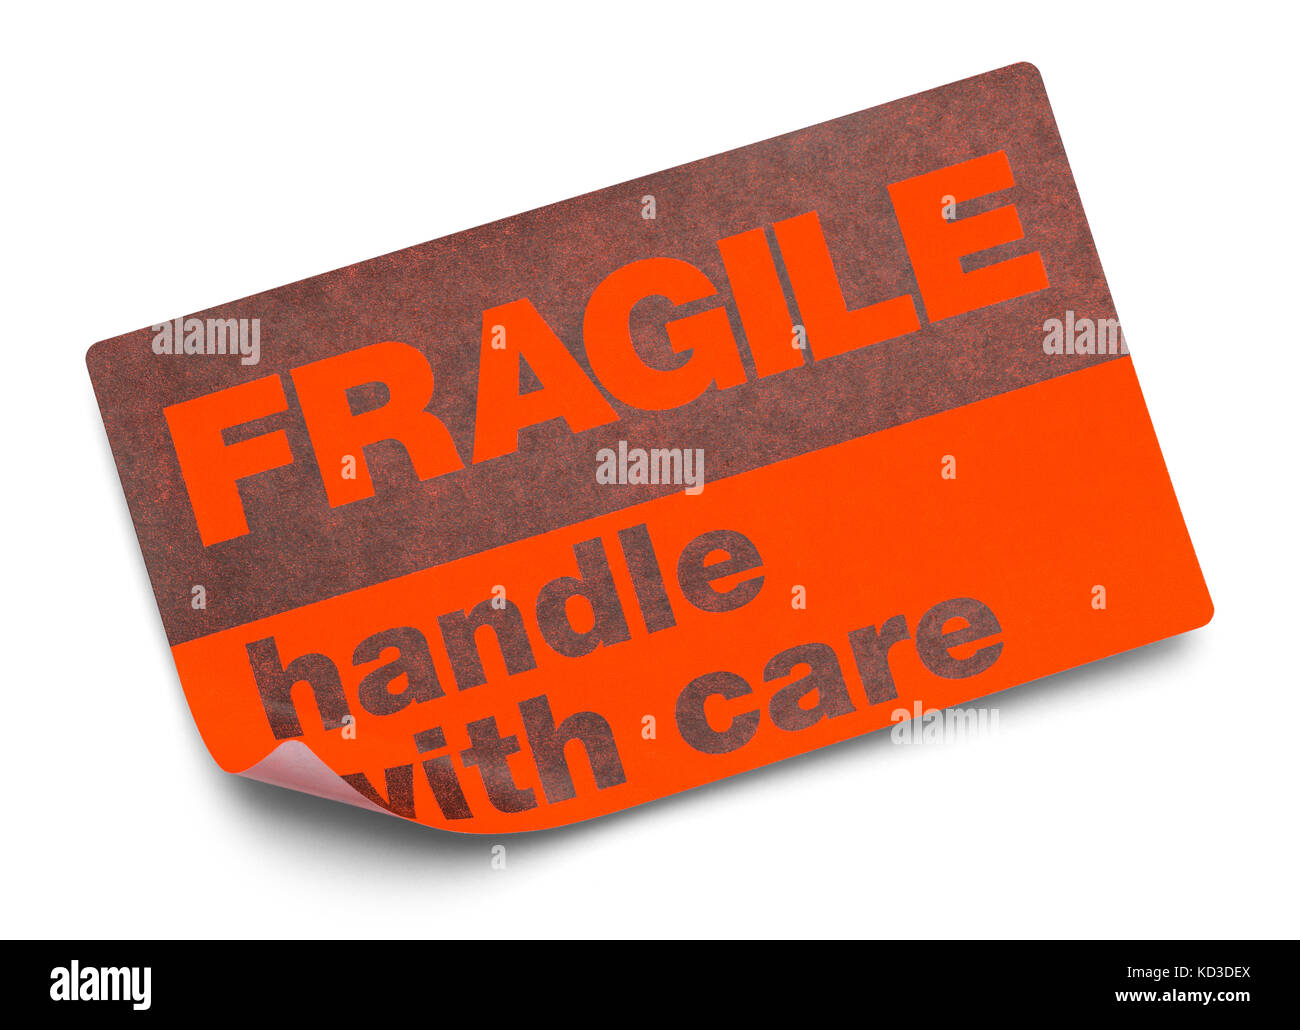 Naranja pegatina frágiles Handle with care aislado sobre fondo blanco. Foto de stock